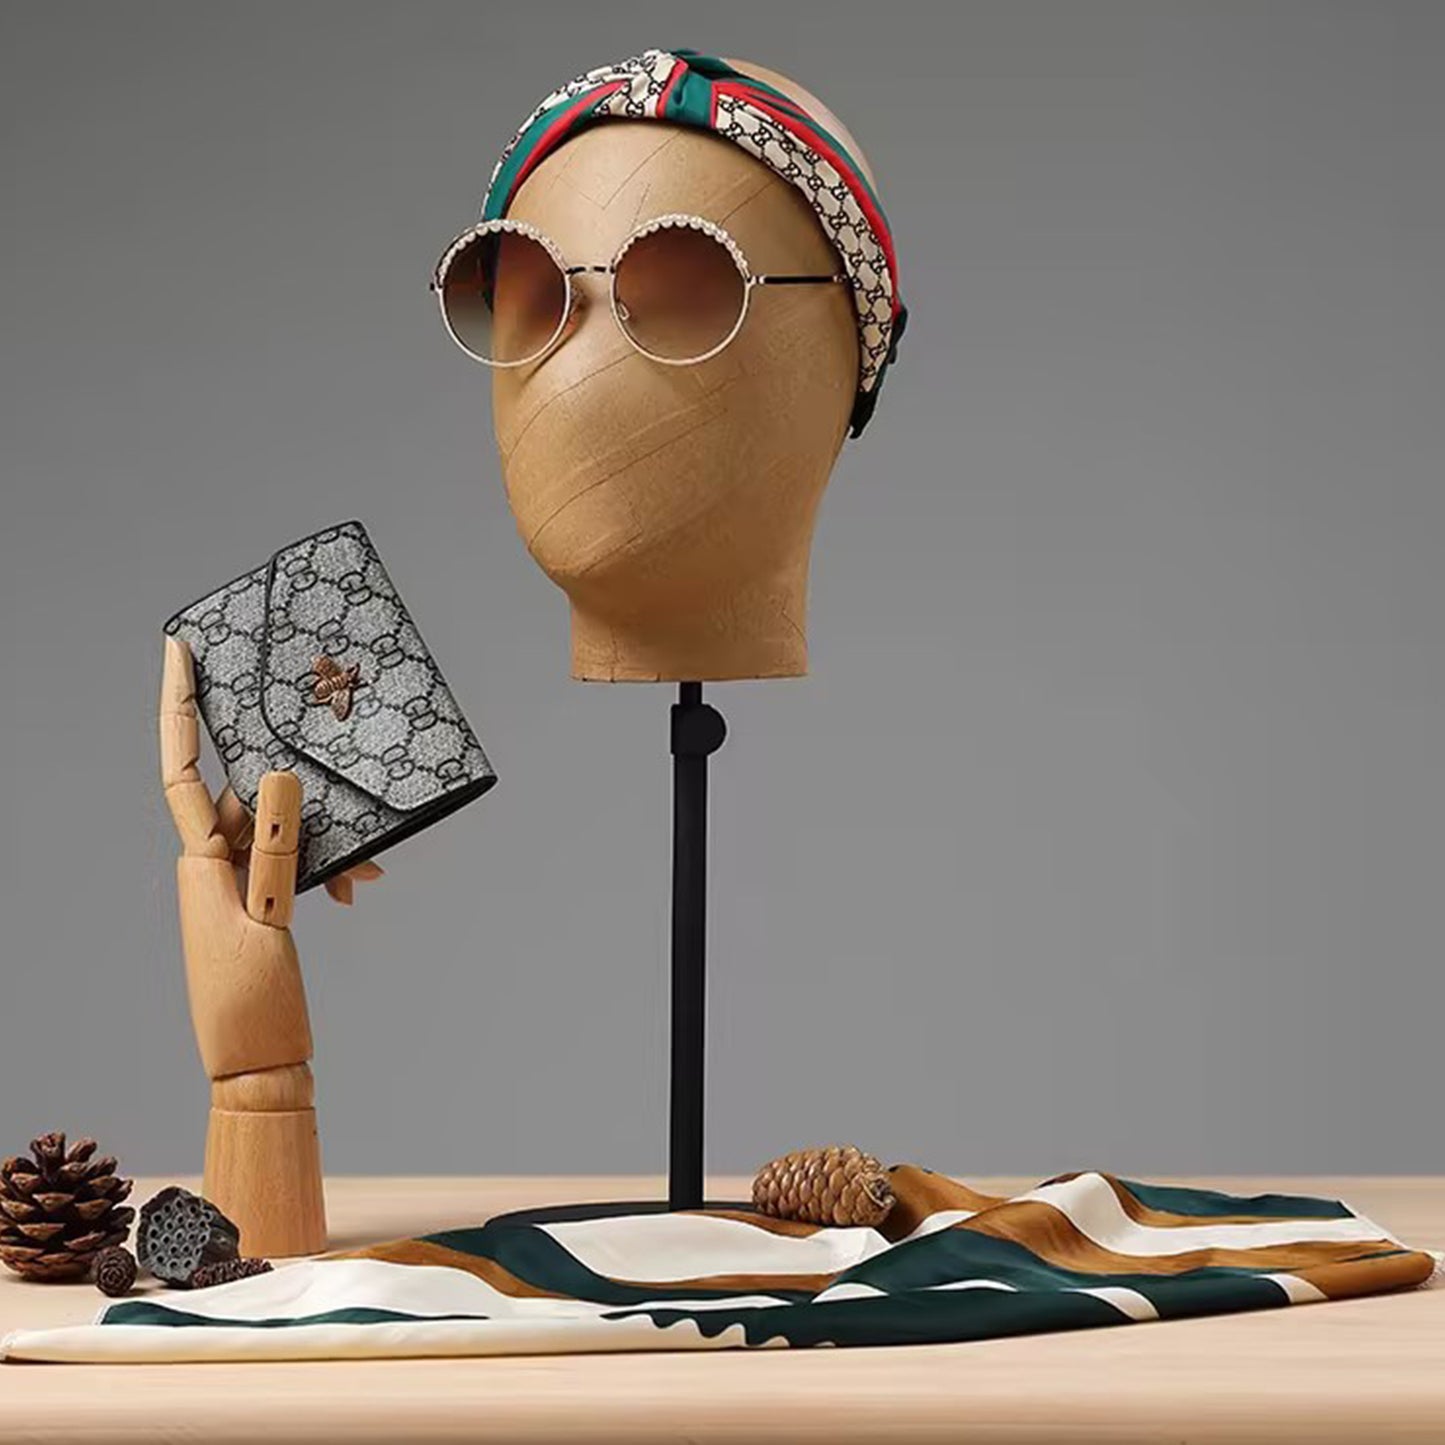 Jelimate Busto di testa di manichino di carta Kraft marrone di alta qualità, forma di vestito di manichino con testa di parrucca, forma di testa di visualizzazione di cappello con fascia per gioielli